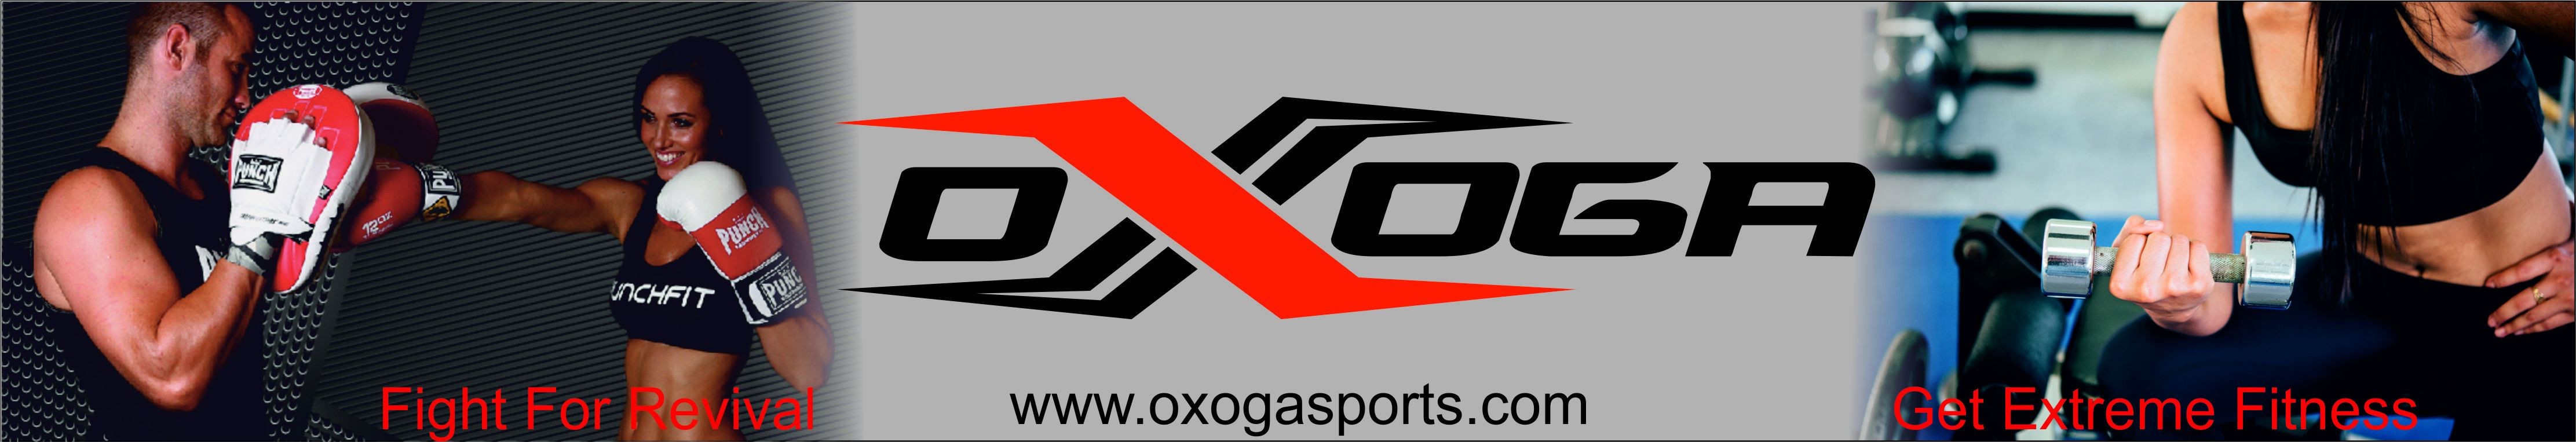 Oxoga Sports